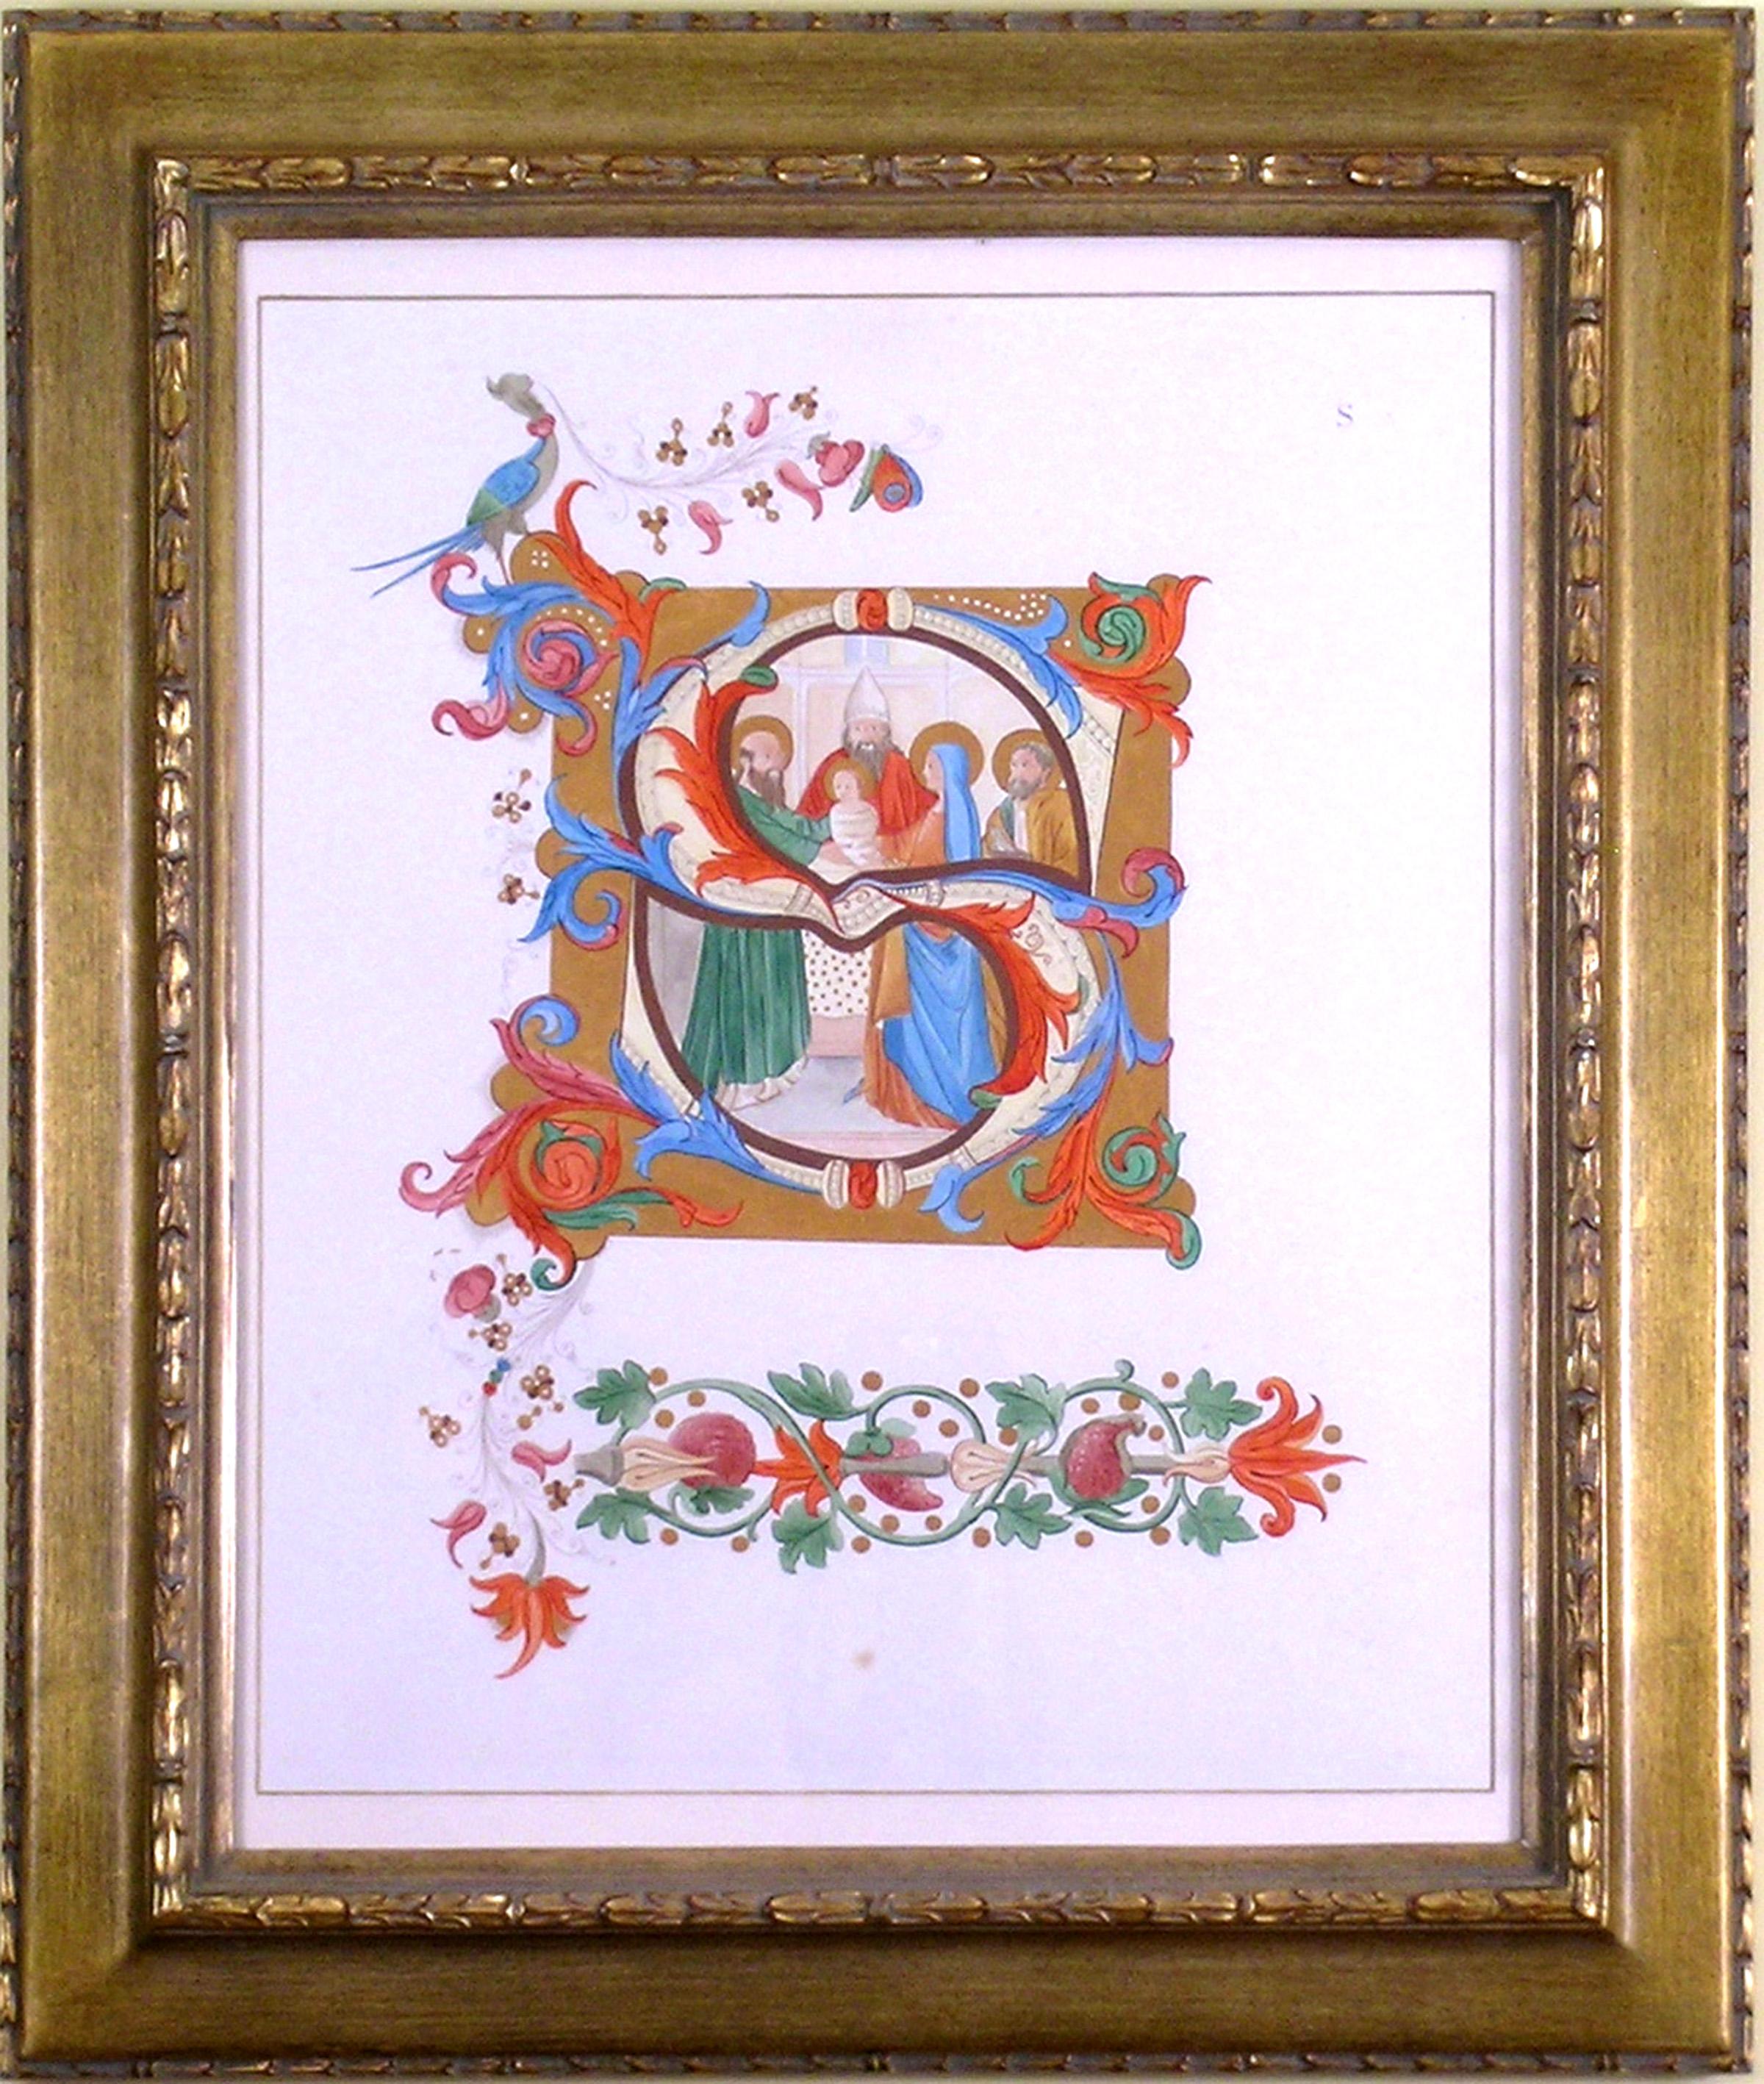 Alphabet Letter "S", Saint, Religious - Art by Unknown